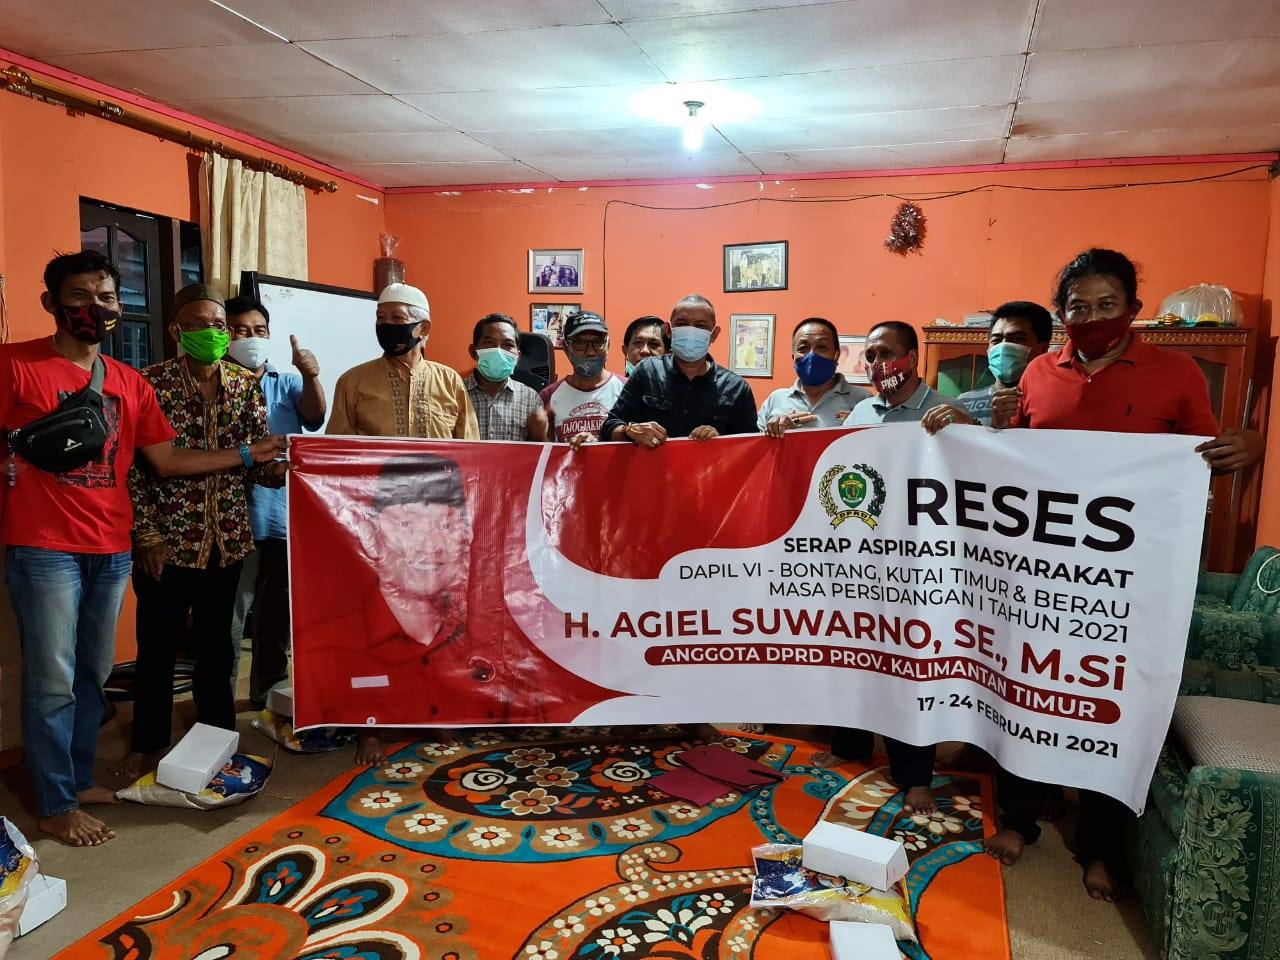 Gelar Reses, Agiel Suwarno Terima Aspirasi Masyarakat Soal Pembangunan Jalan Tol Bontang-Samarinda dan Beasiswa Pendidikan